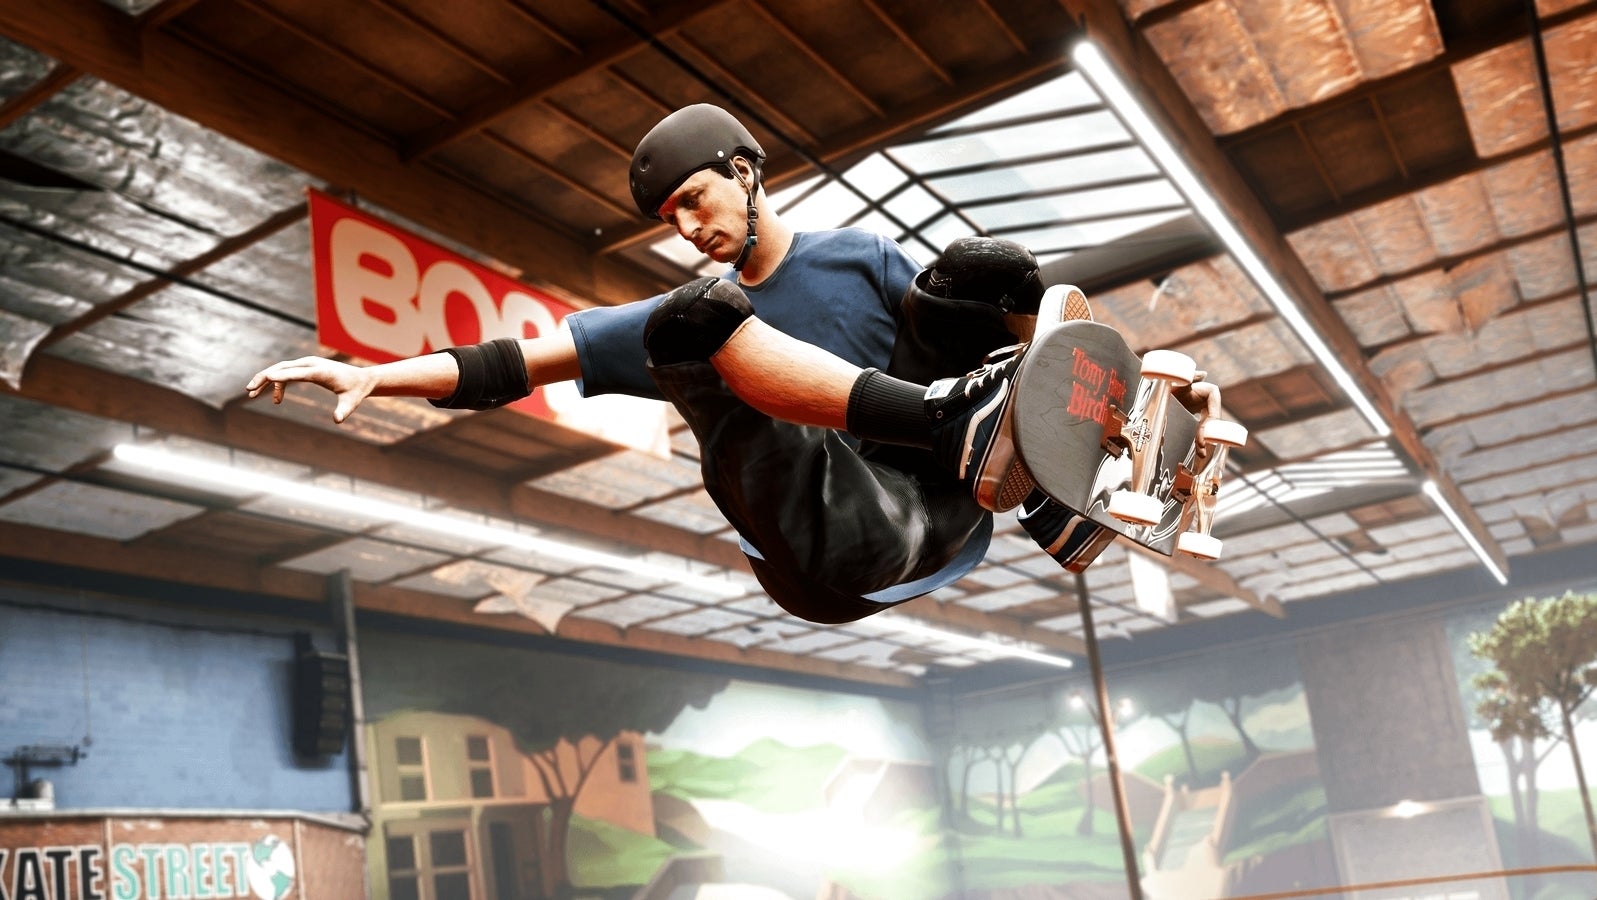 Bilder zu Tony Hawk's Pro Skater 1+2 für Switch, PS5 und Xbox Series X/S bestätigt - Upgrade kostet 10 Dollar